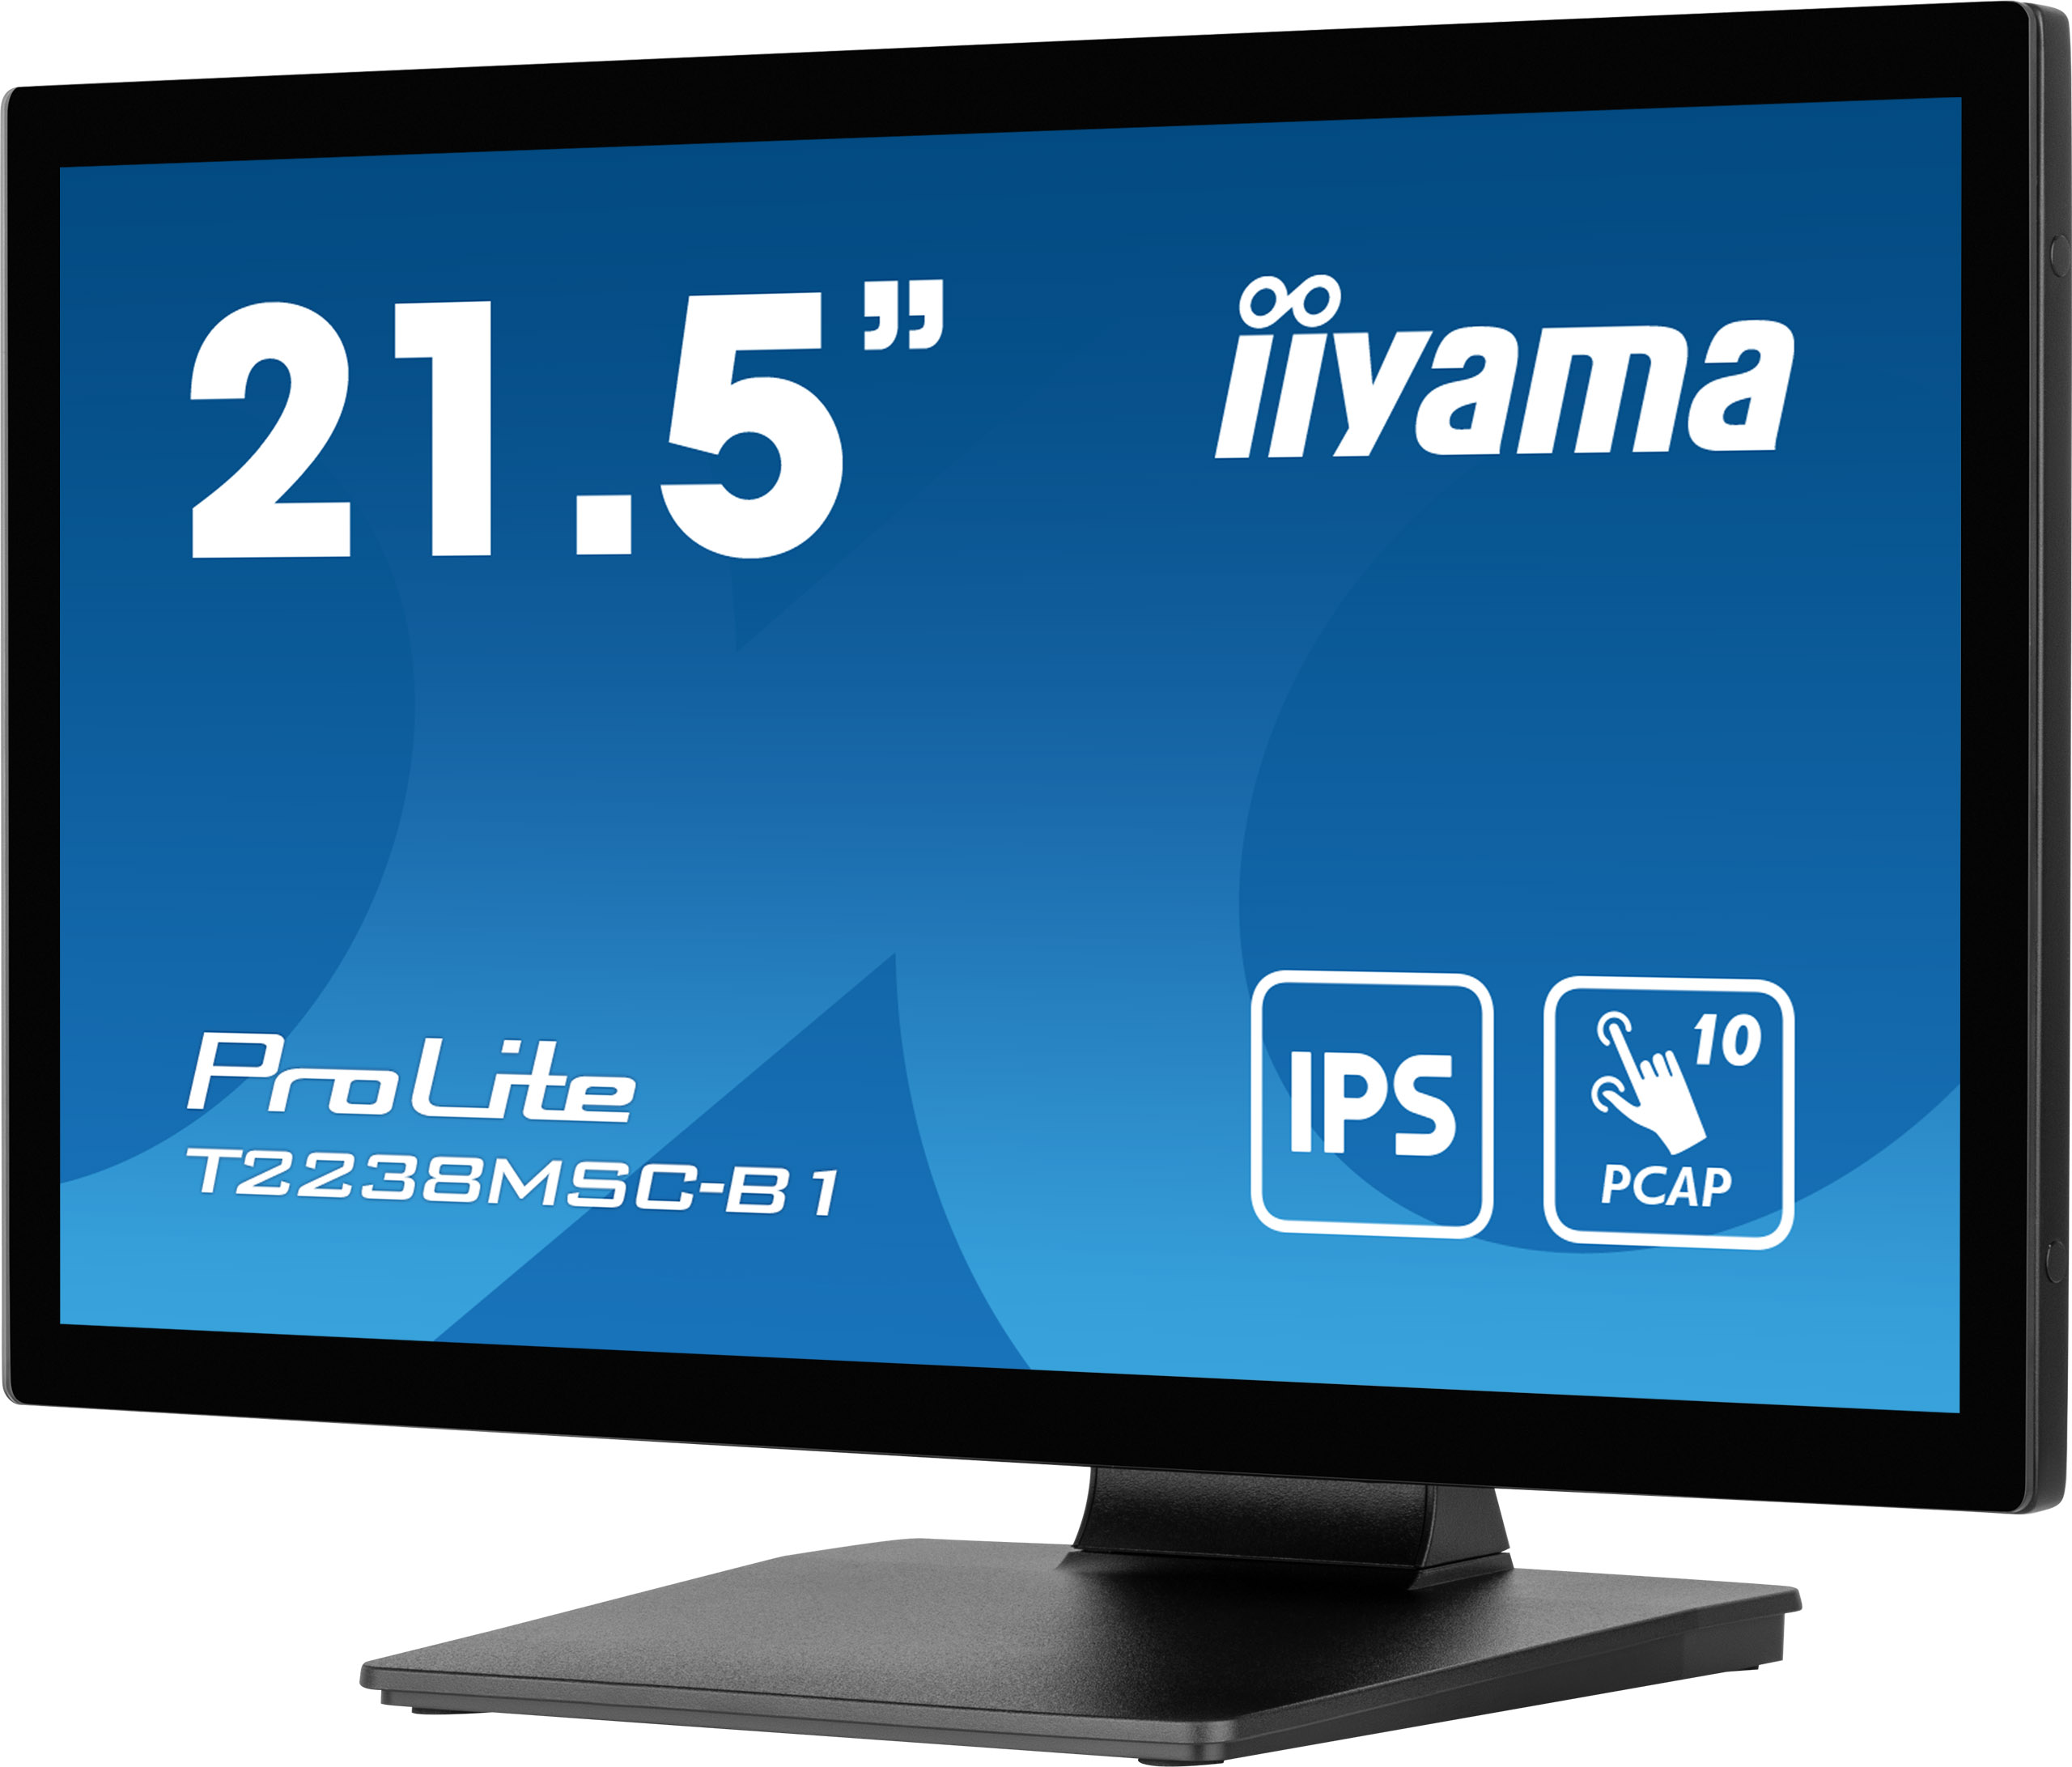 22" LCD iiyama T2238MSC-B1 